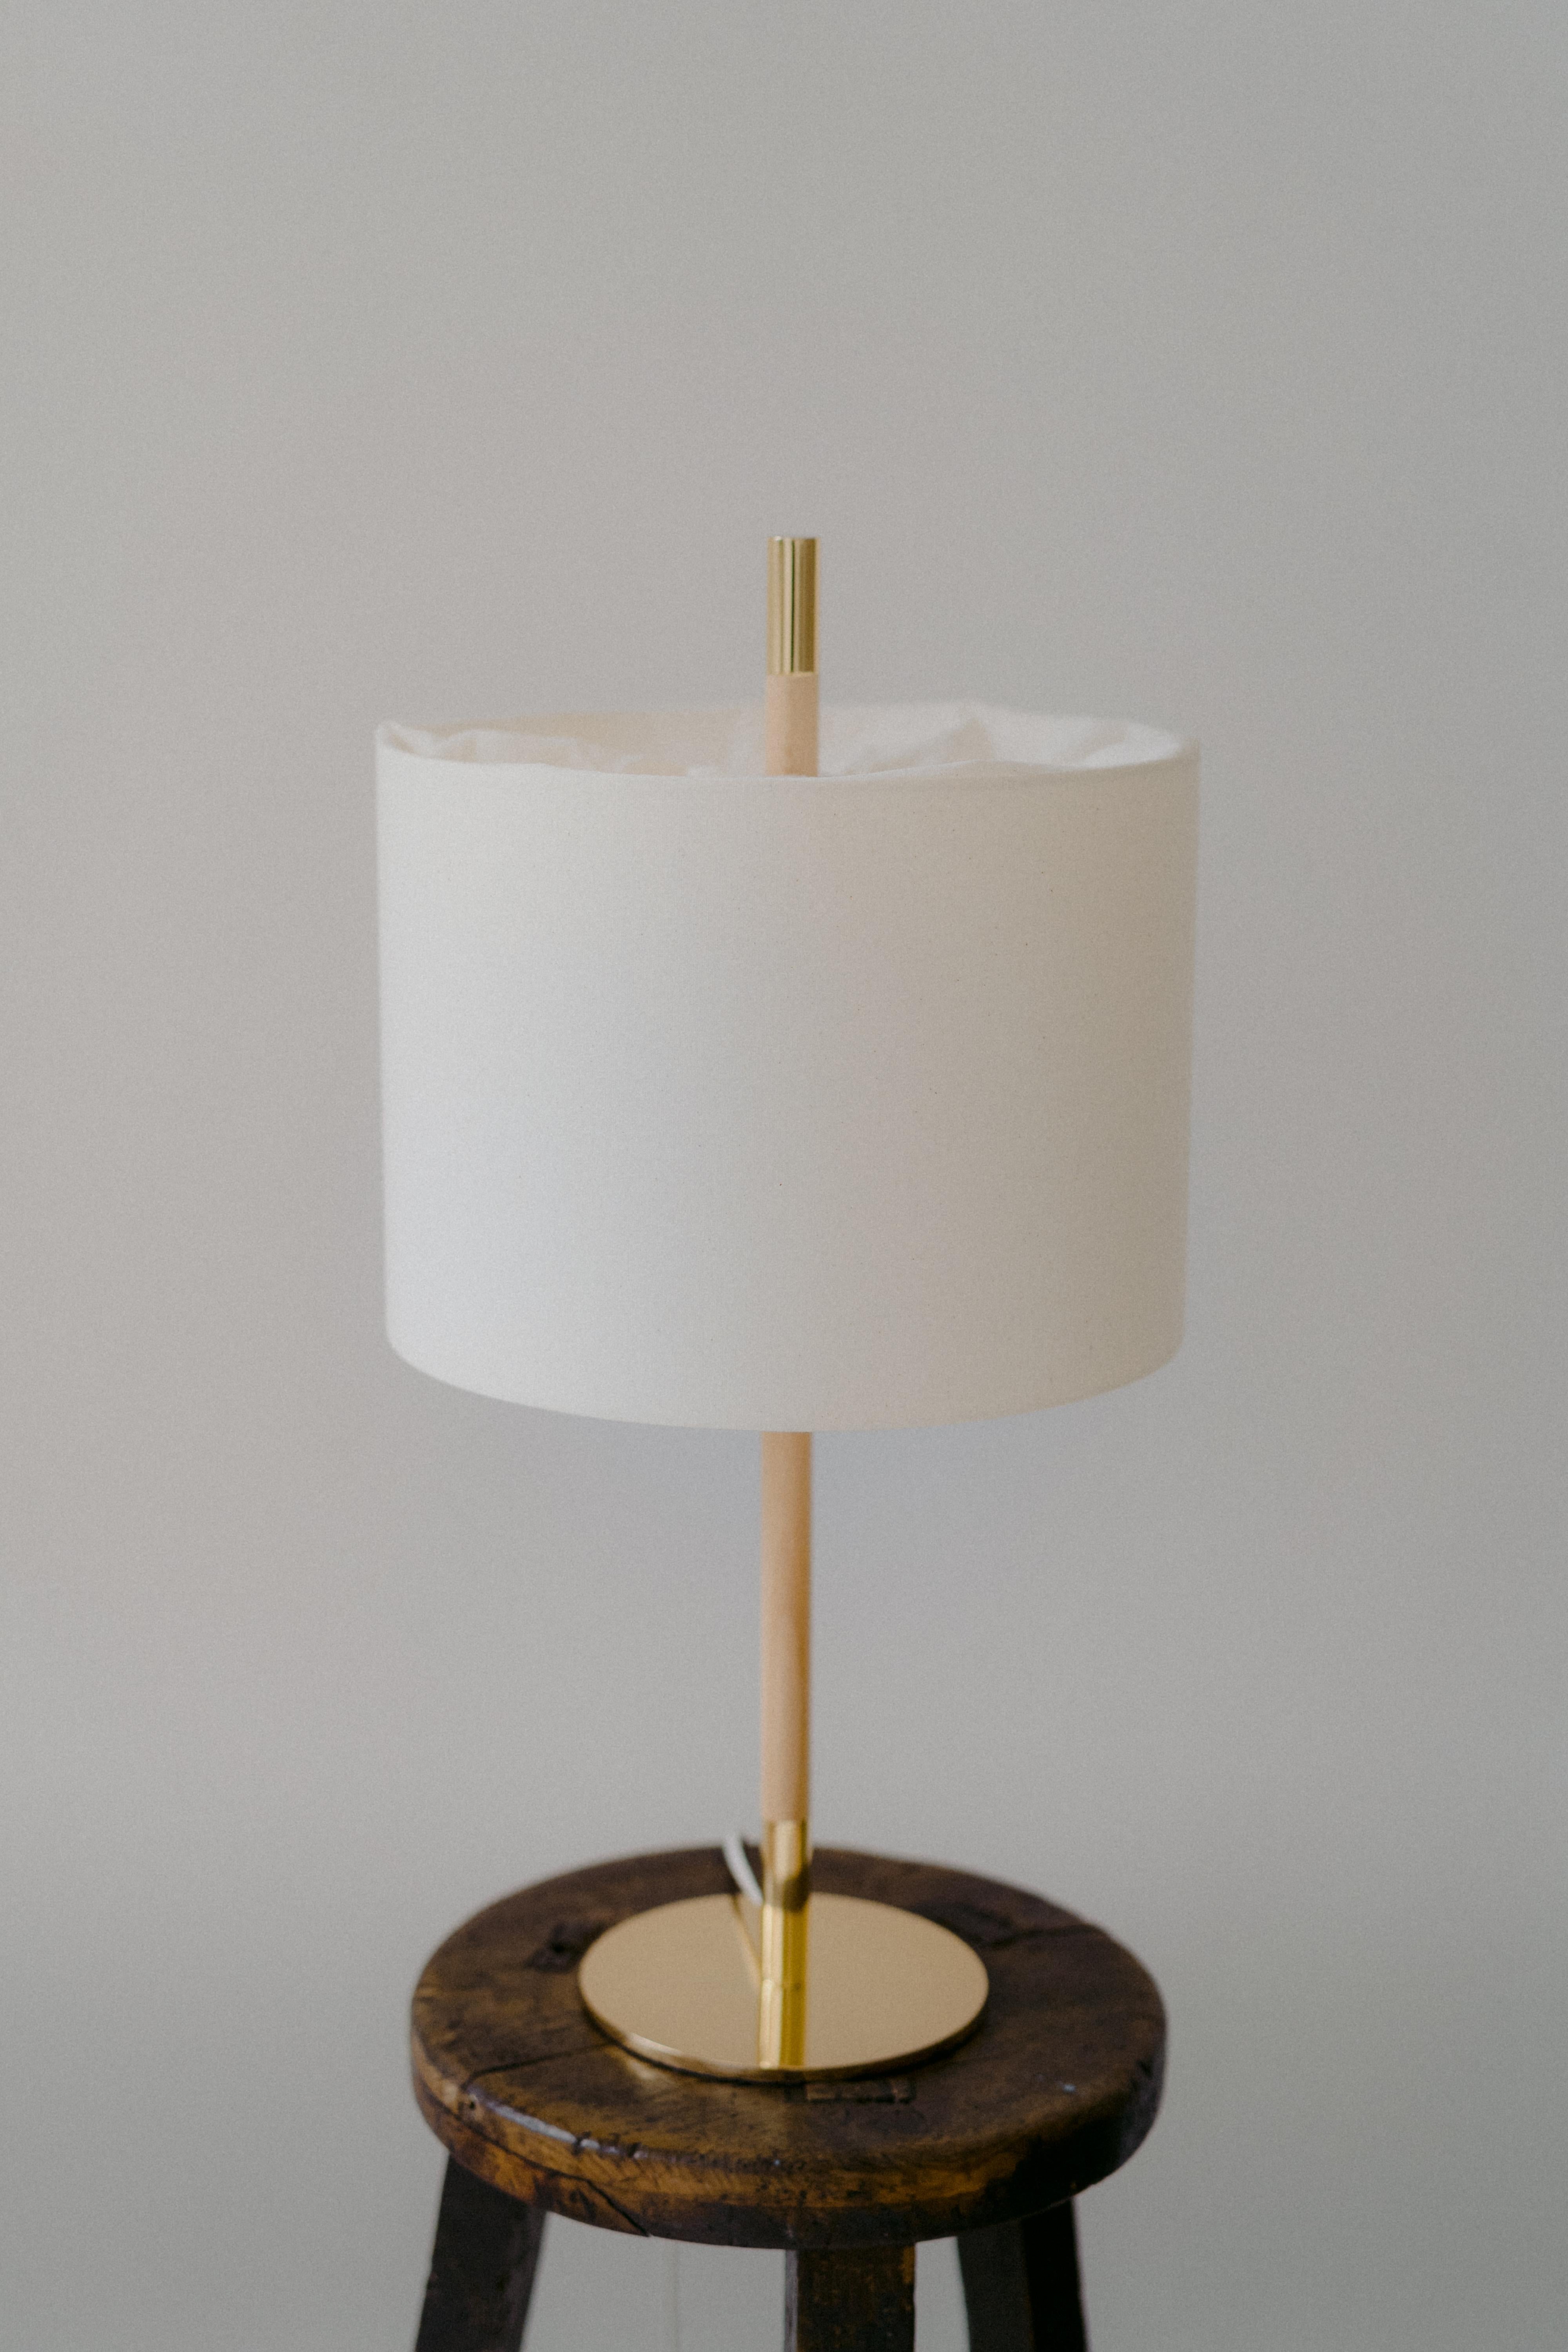 AMÀ TISCHLAMPE

Das Lampenmodell Amà bietet eine Variante mit einem natürlich strukturierten Stoffschirm in Weiß.
Oben faltet sich der Stoff, um die Lichtquelle zu verbergen, was ein einzigartiges Detail darstellt.
Wie bei der Rattan-Version